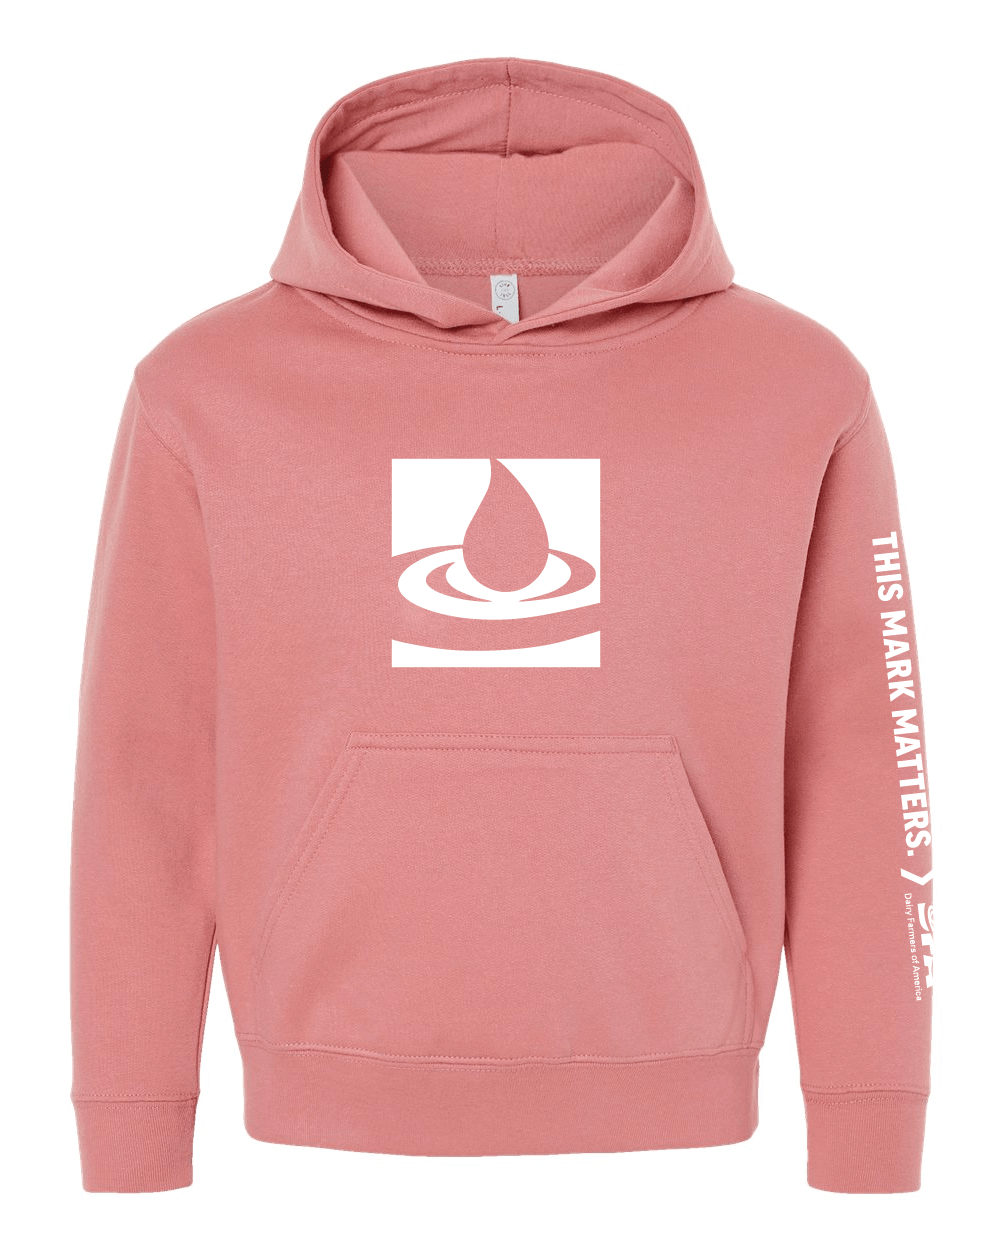 Milk drop youth sweatshirt hoodie